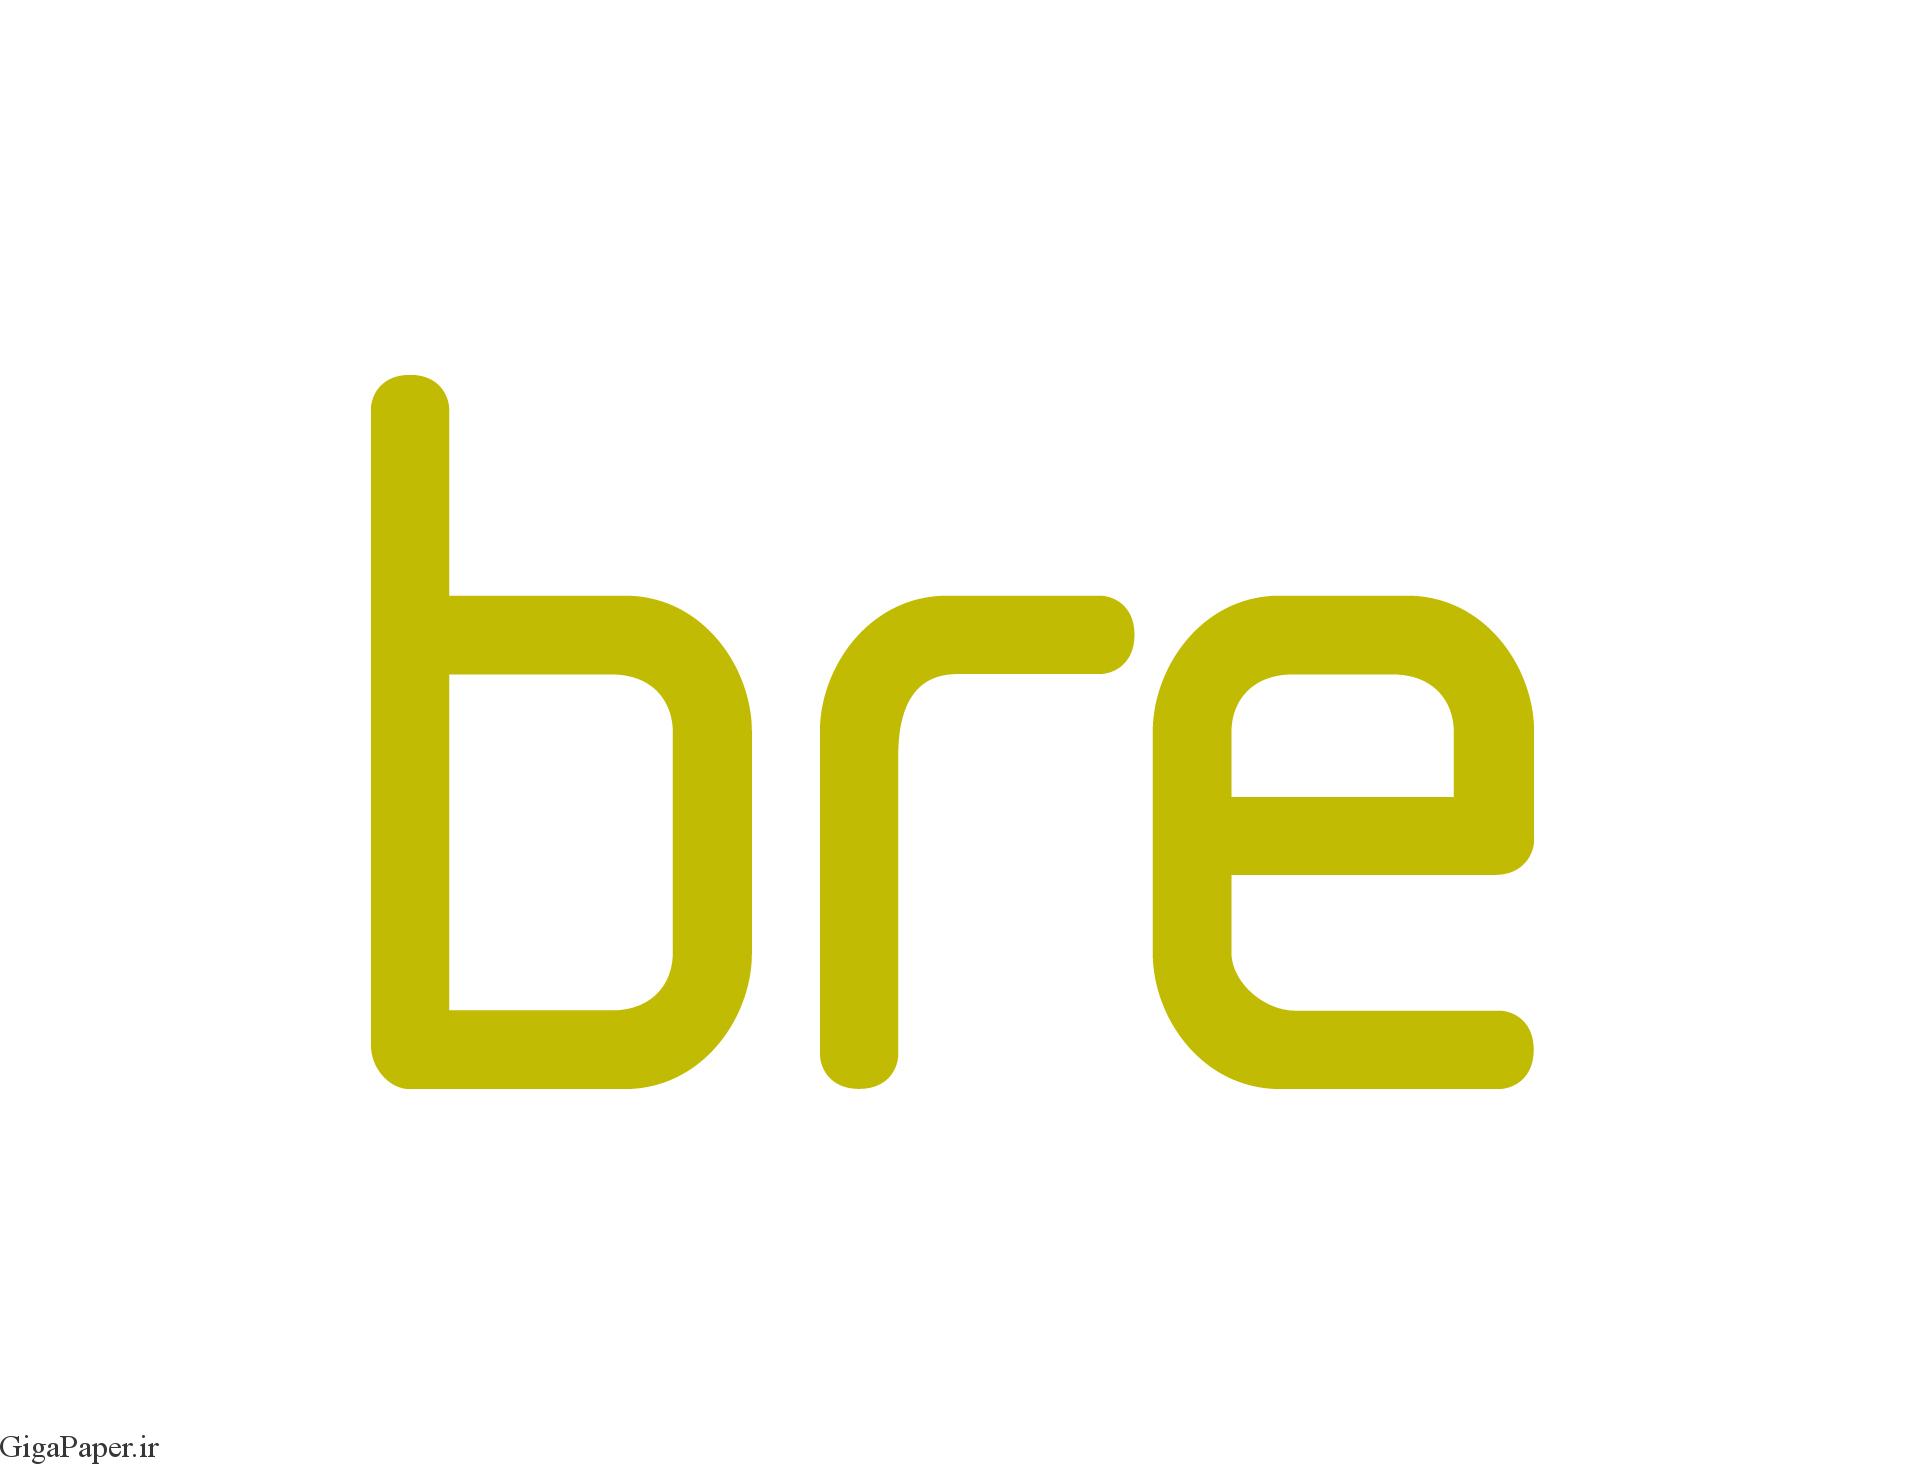 دانلود کتاب از BRE Press خرید کتاب از انتشارات BRE خرید گزارش از انتشارات BRE دانلود گزارشات IHS BRE Press مشخصات گزارش BRE جدیدترین کتابها و گزارشهای BRE